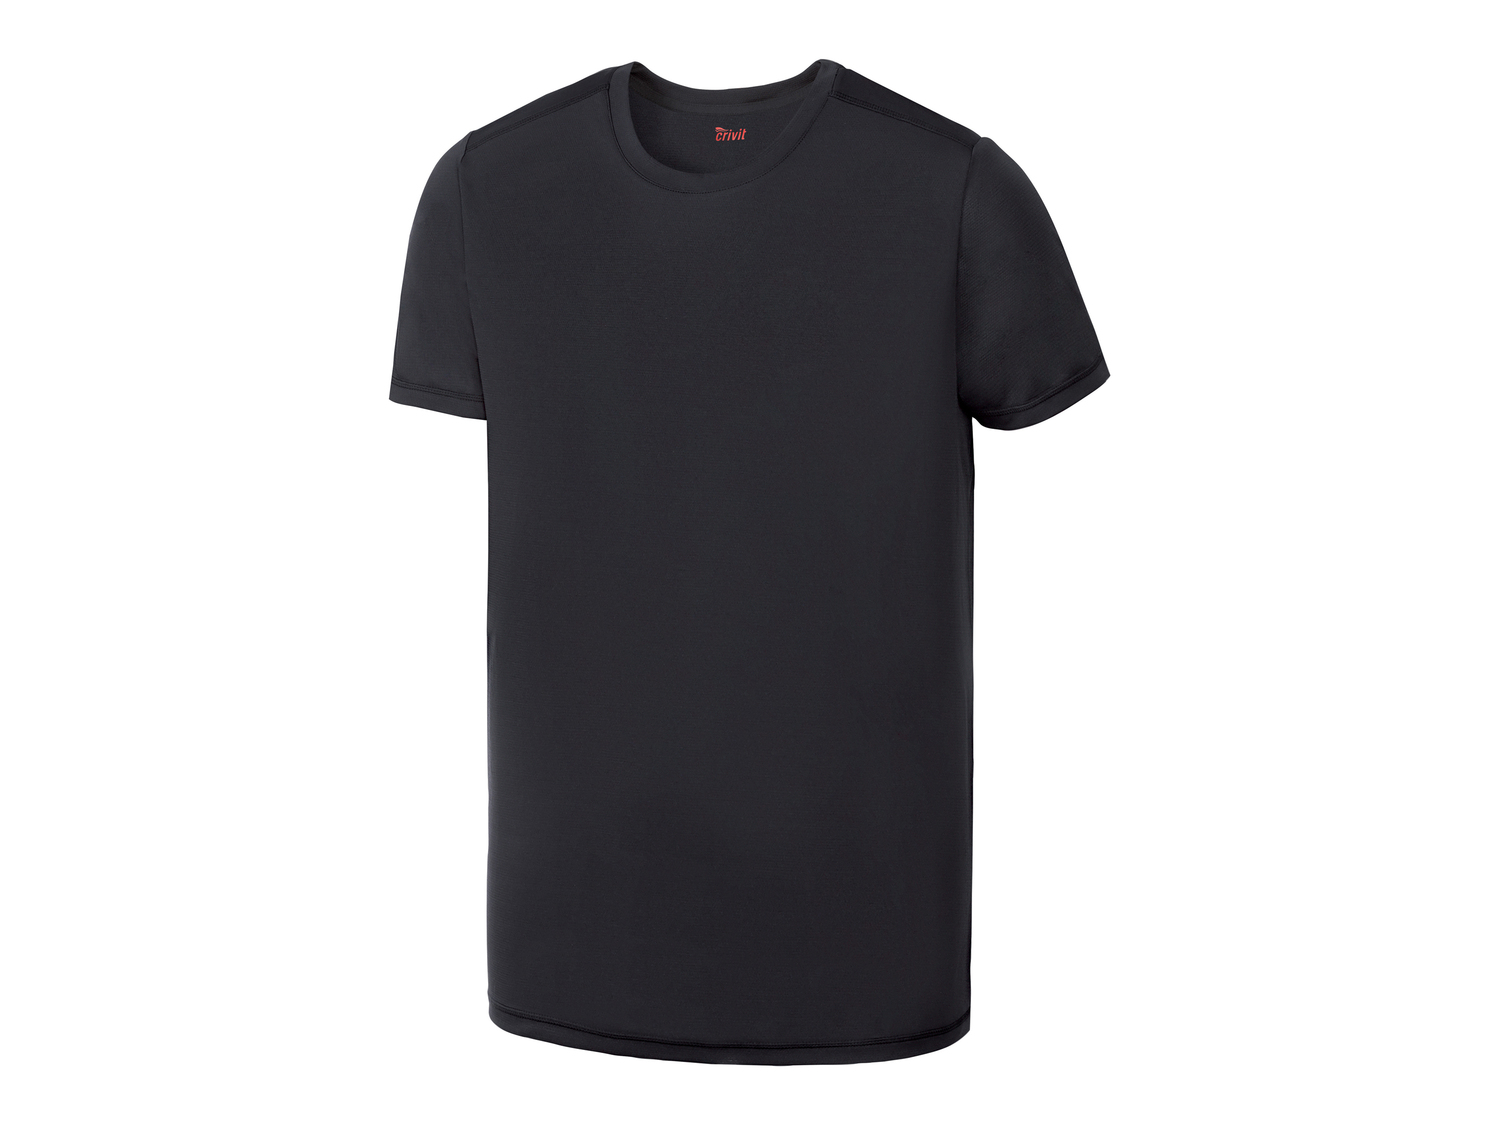 T-shirt sportiva da uomo Crivit, prezzo 3.99 &#8364; 
Misure: S-L
Taglie disponibili

Caratteristiche

- ...